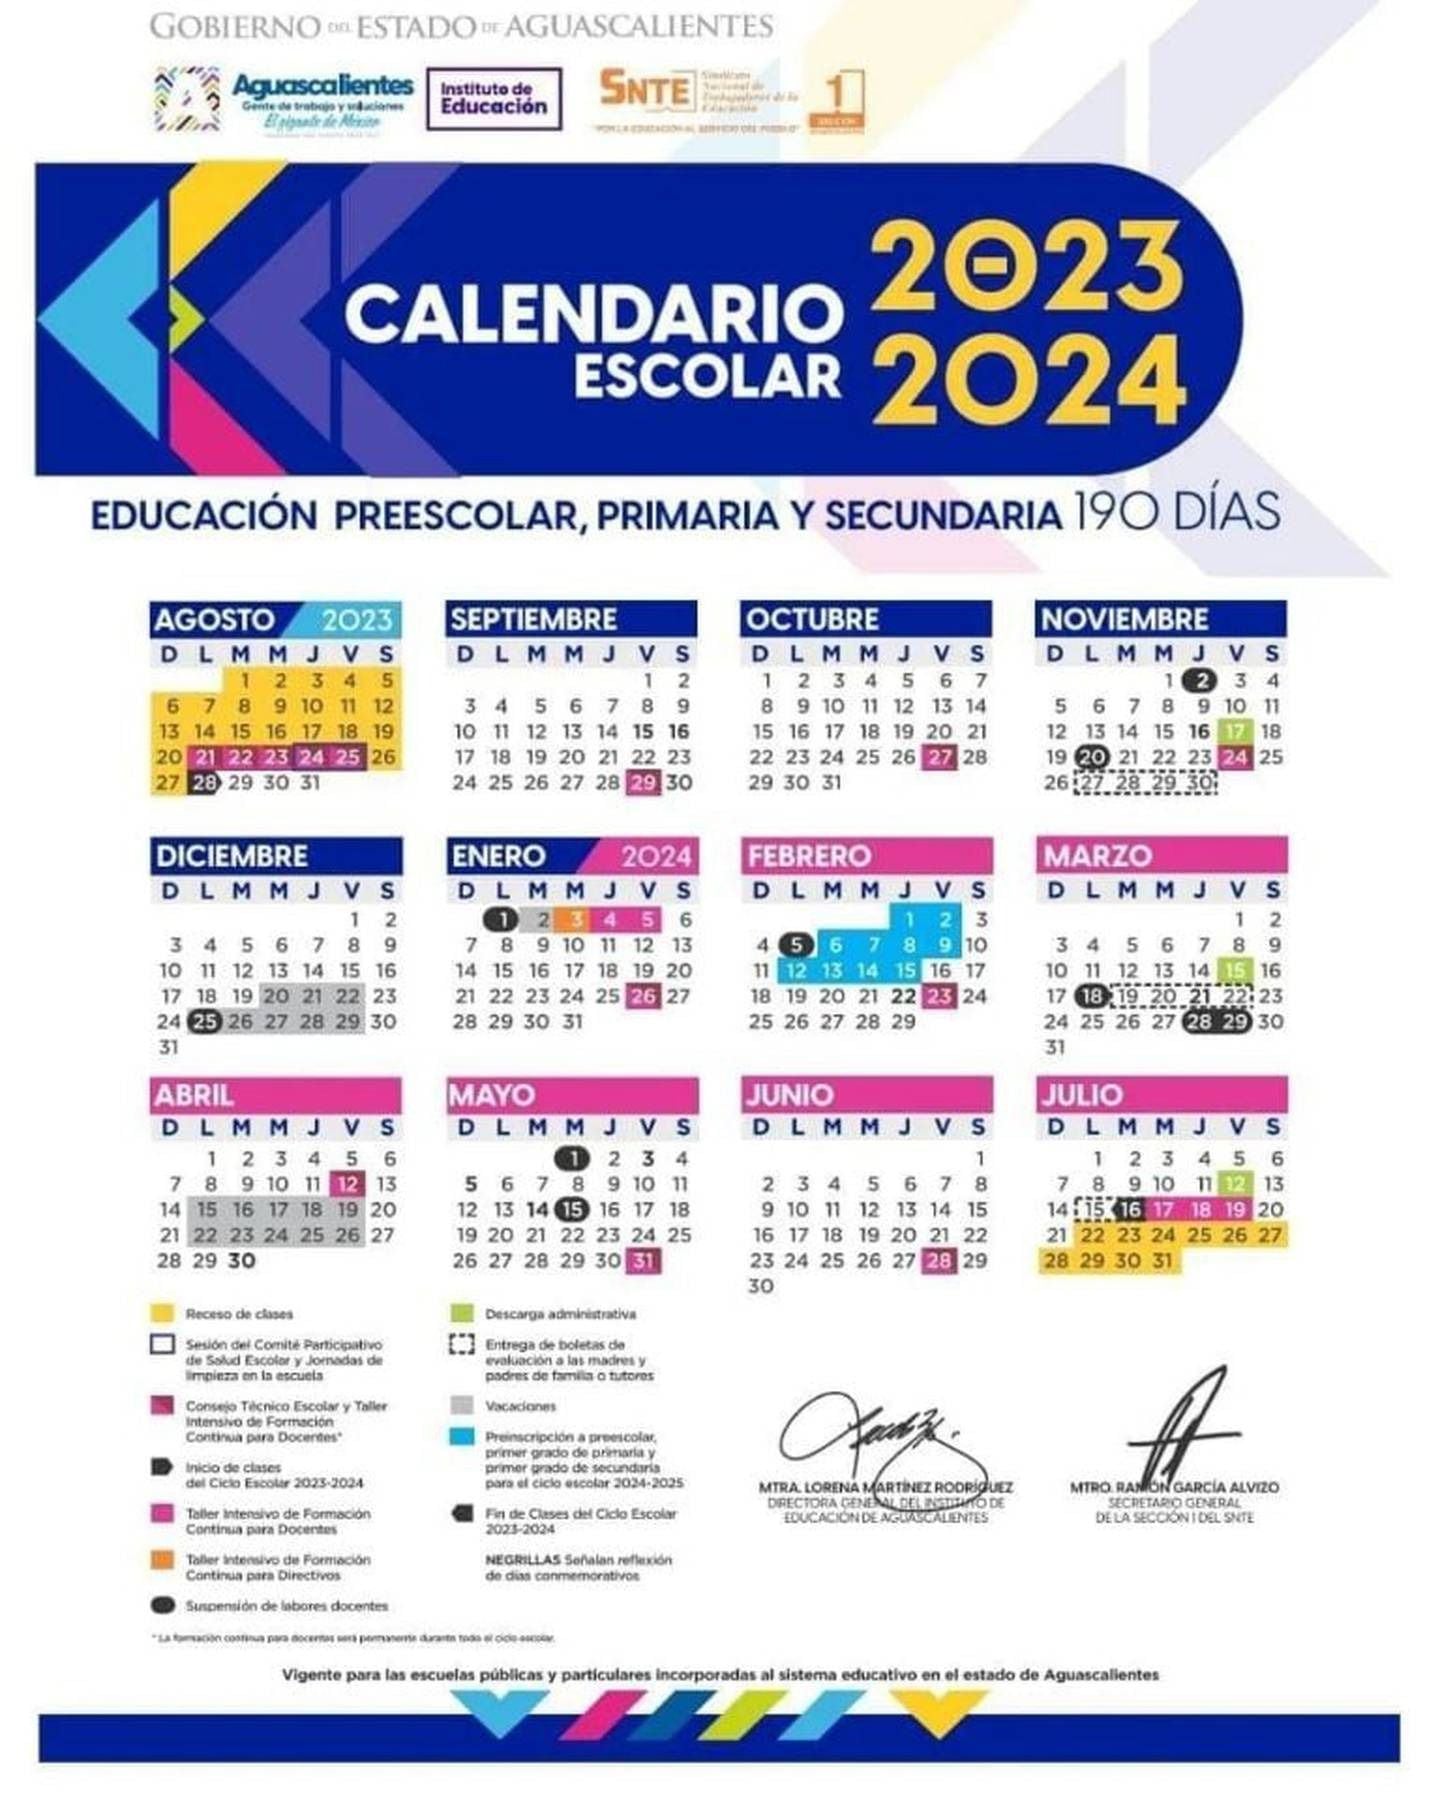 Este es el calendario escolar 2023-24 en Aguascalientes.